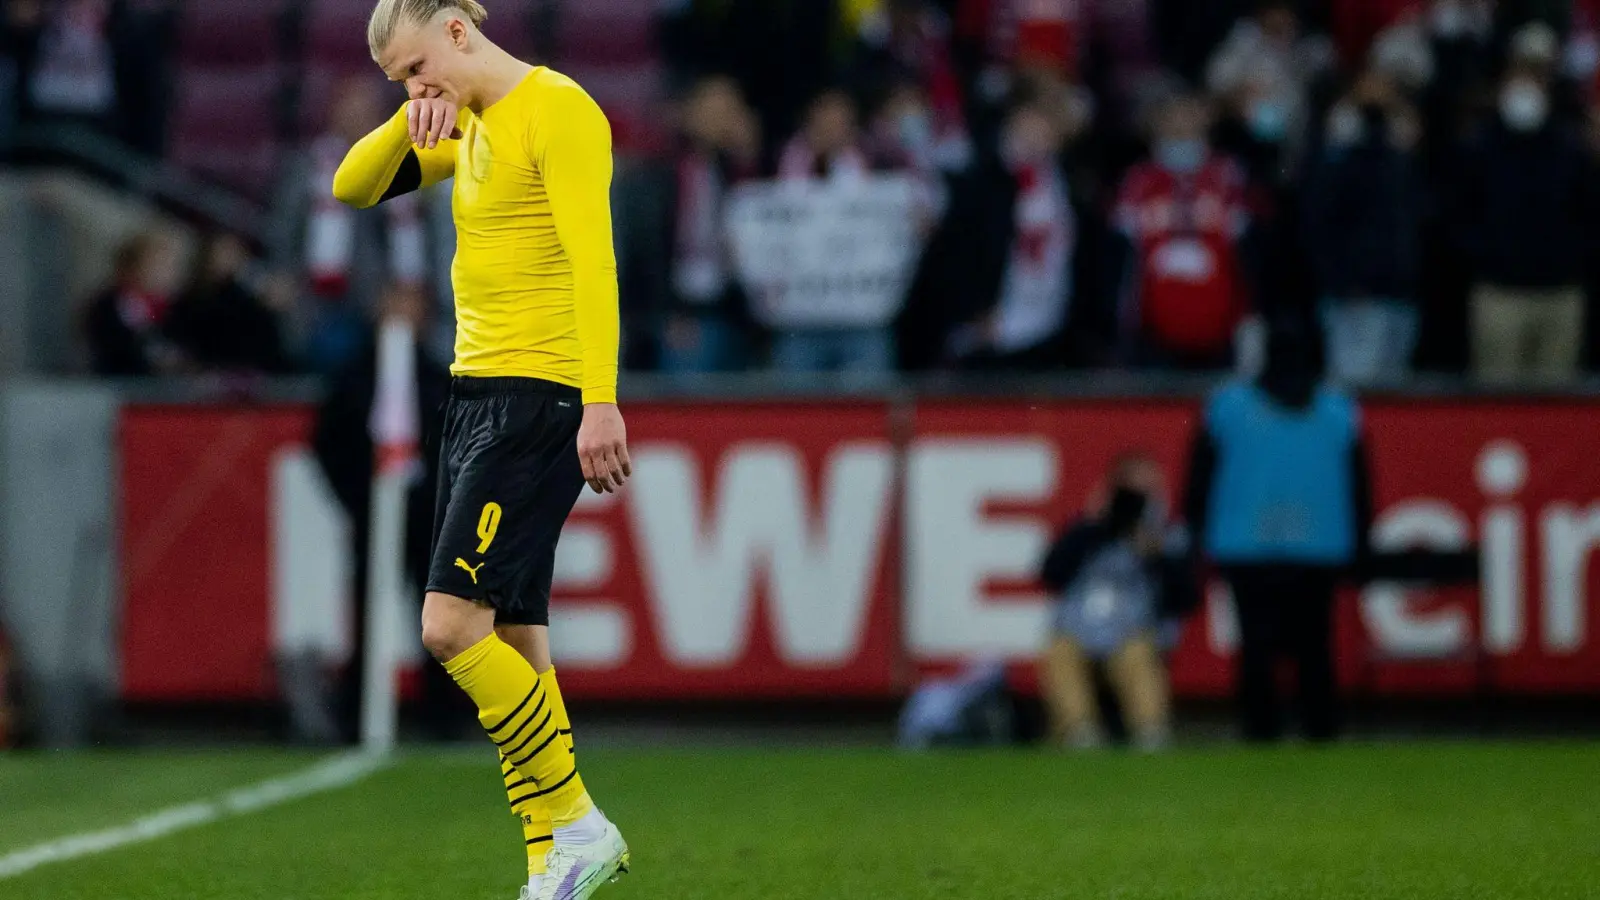 Der Einzige, der wohl noch an eine echte Titelchance für Borussia Dortmund geglaubt hatte: Erling Haaland verlässt den Platz. (Foto: Rolf Vennenbernd/dpa)